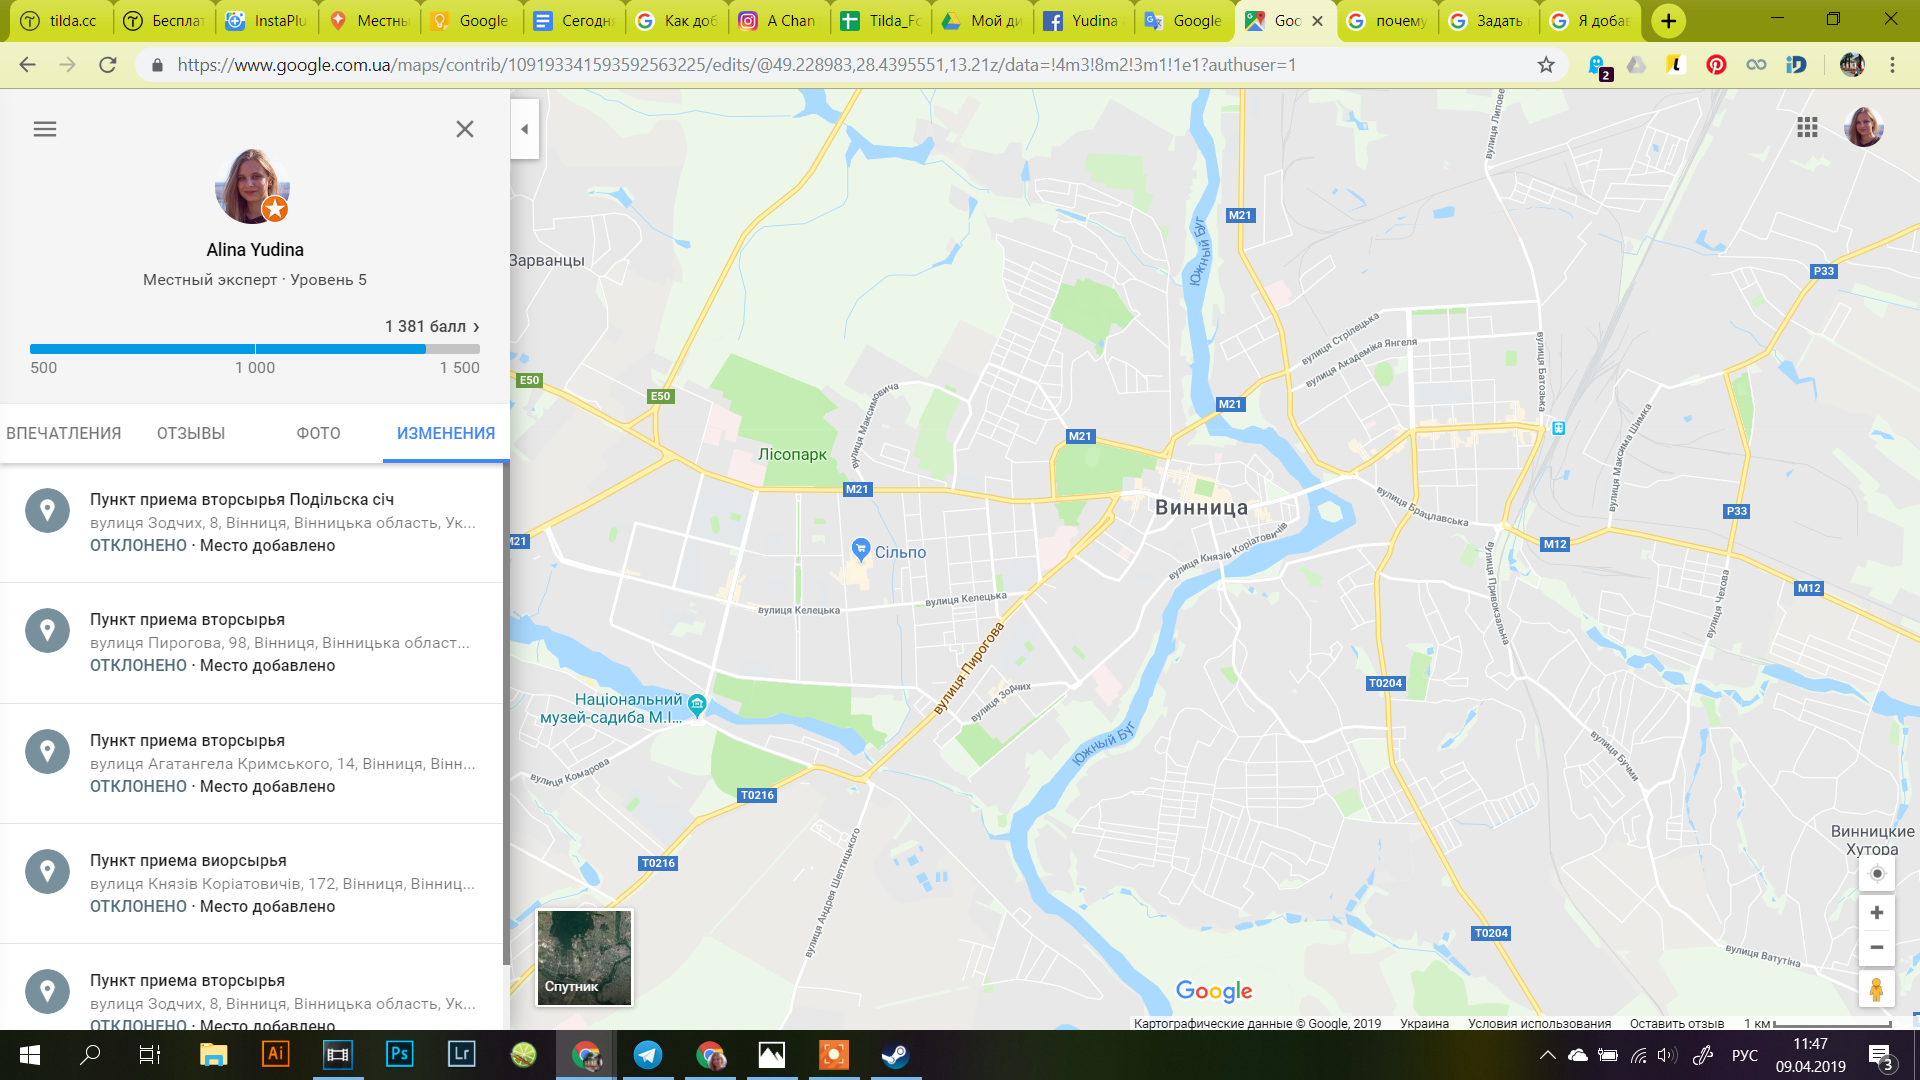 Гугл карта контакты. Гугл карты. Гугл карты Мои карты. Гугл карты Екатеринбург. Карта пунктов приема вторсырья.